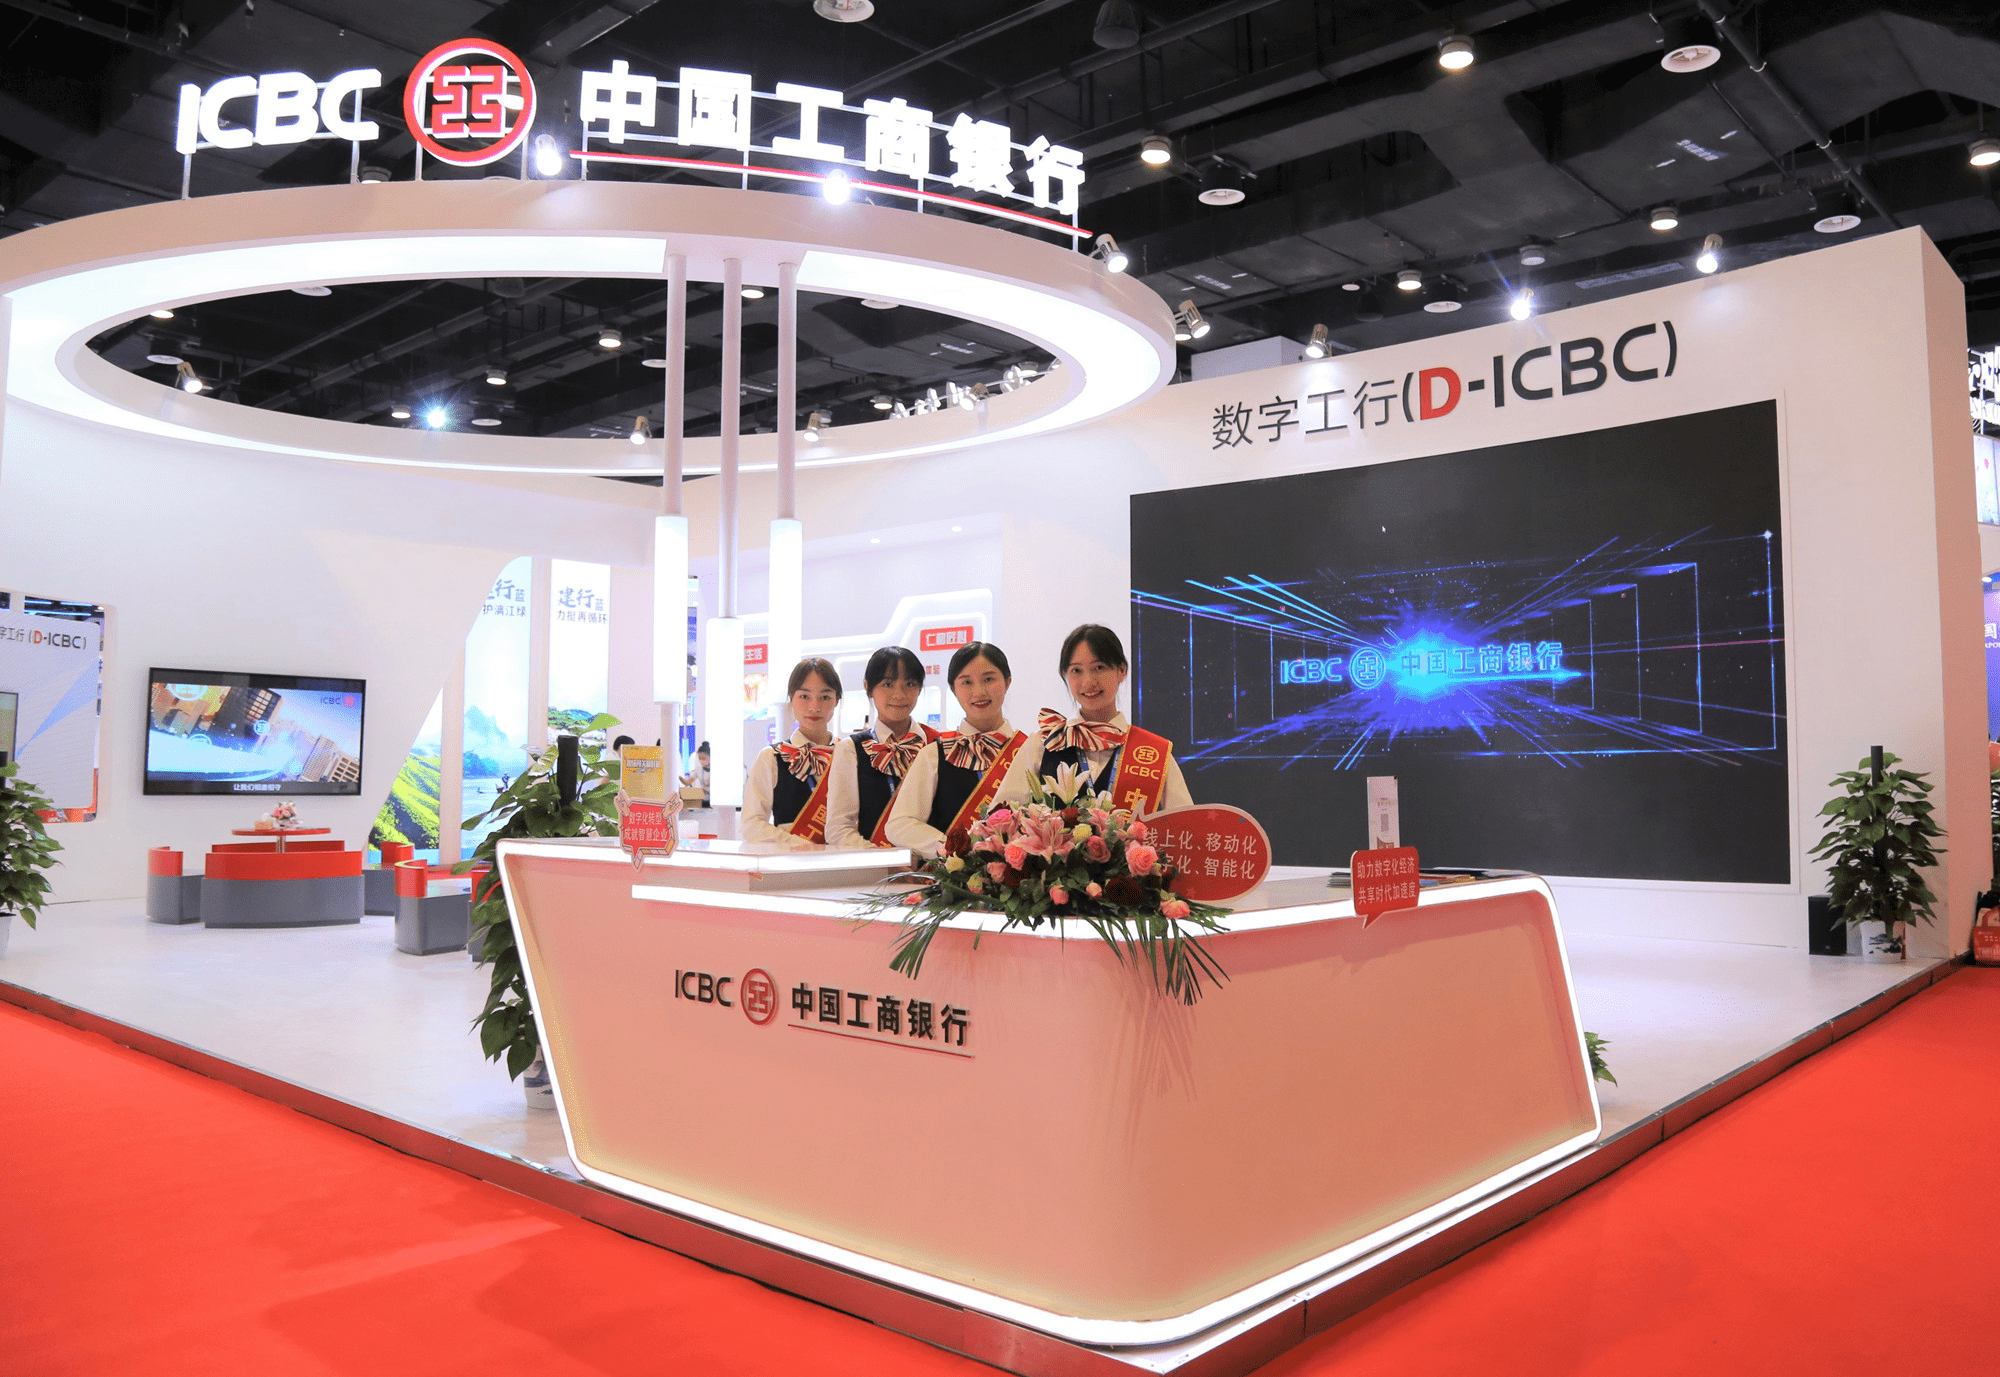 工商银行广西分行亮相第19届东博会 展现全新数字化品牌形象